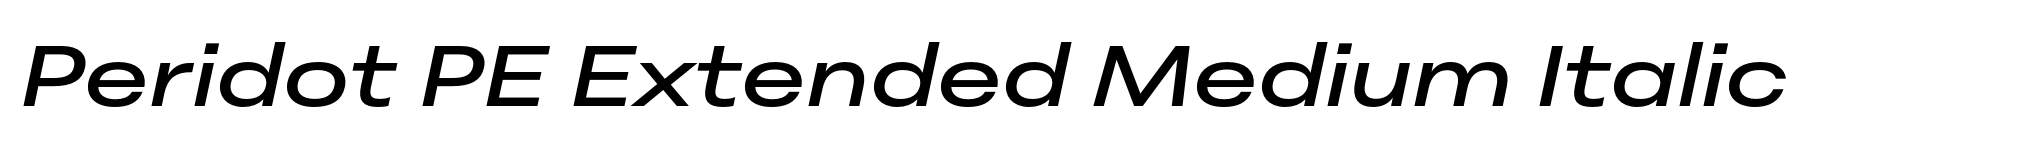 Peridot PE Extended Medium Italic image